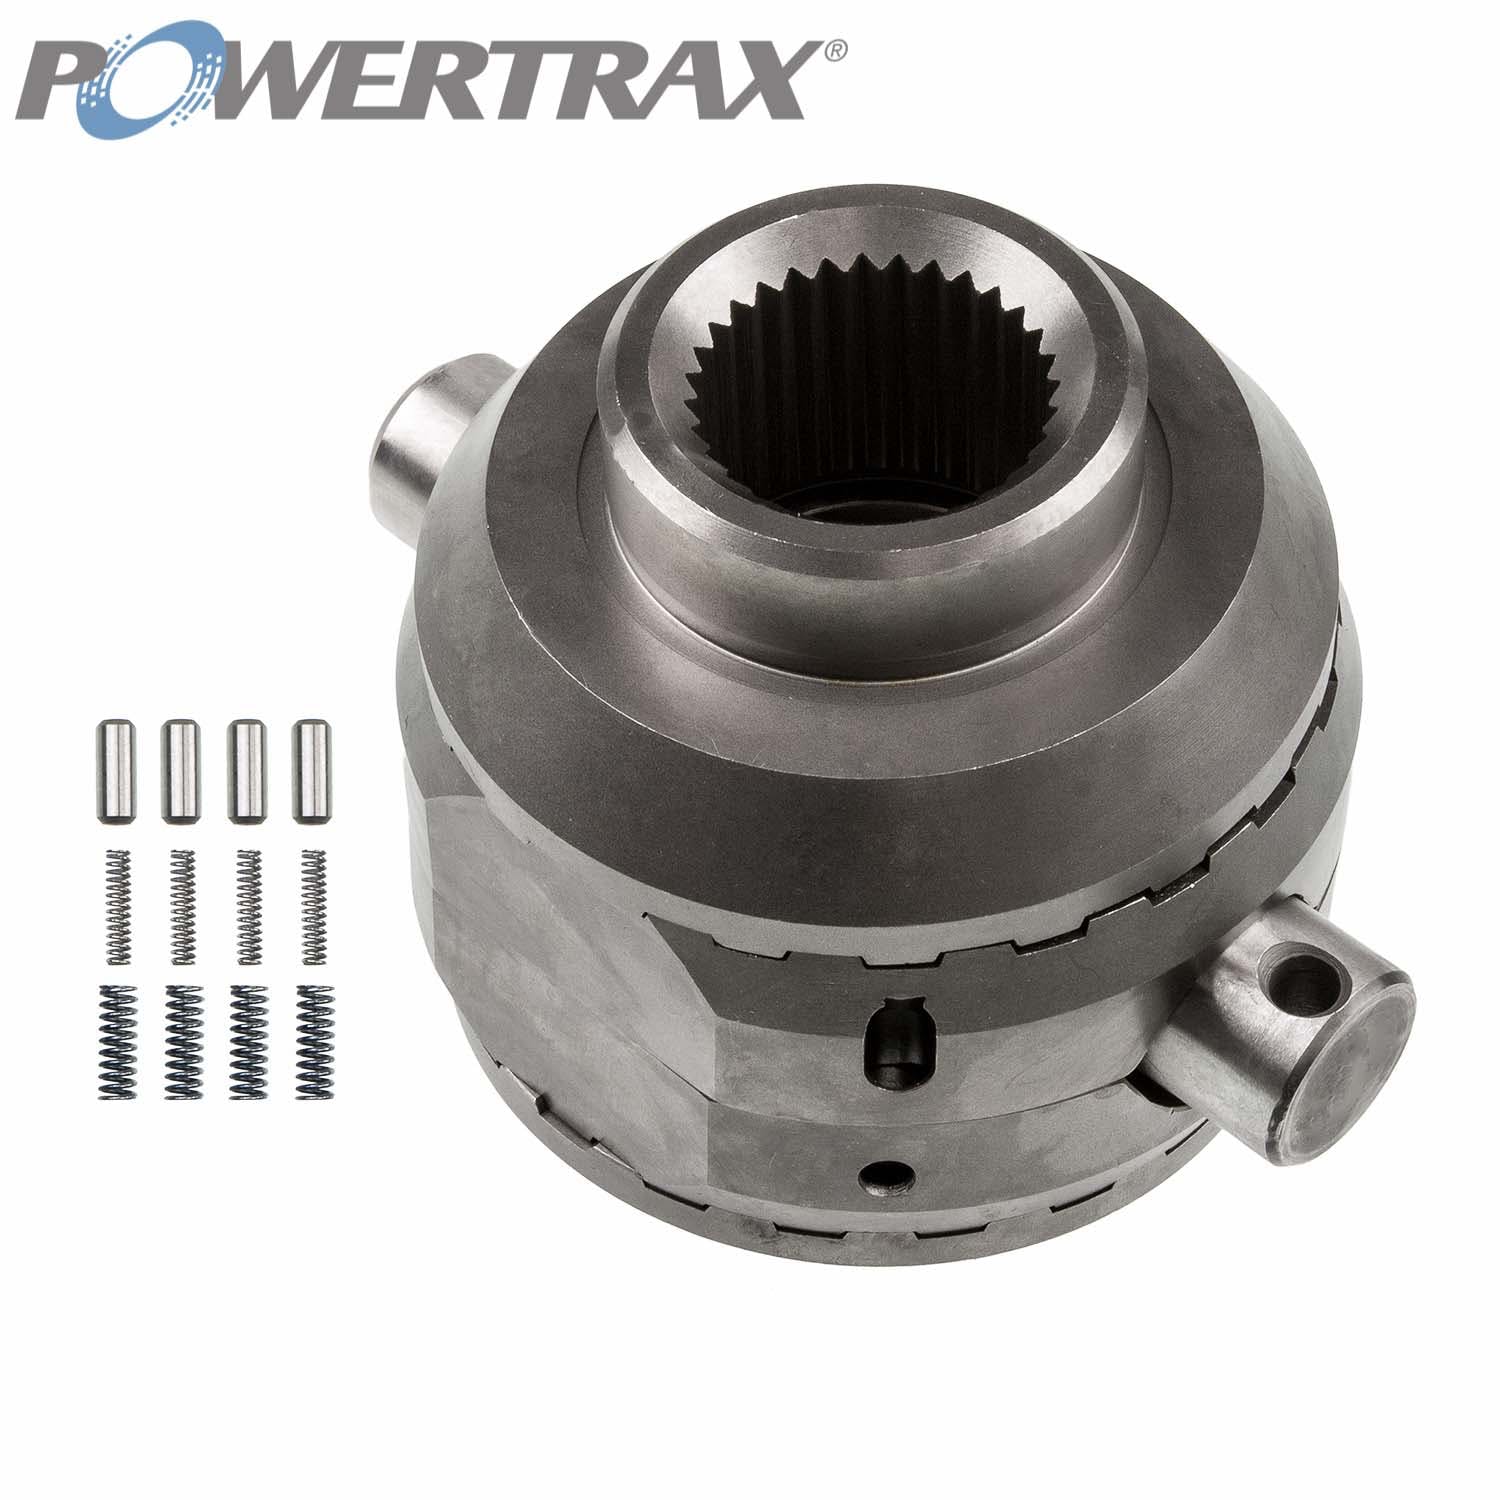 PowerTrax 1822-LR Lock Right Locker